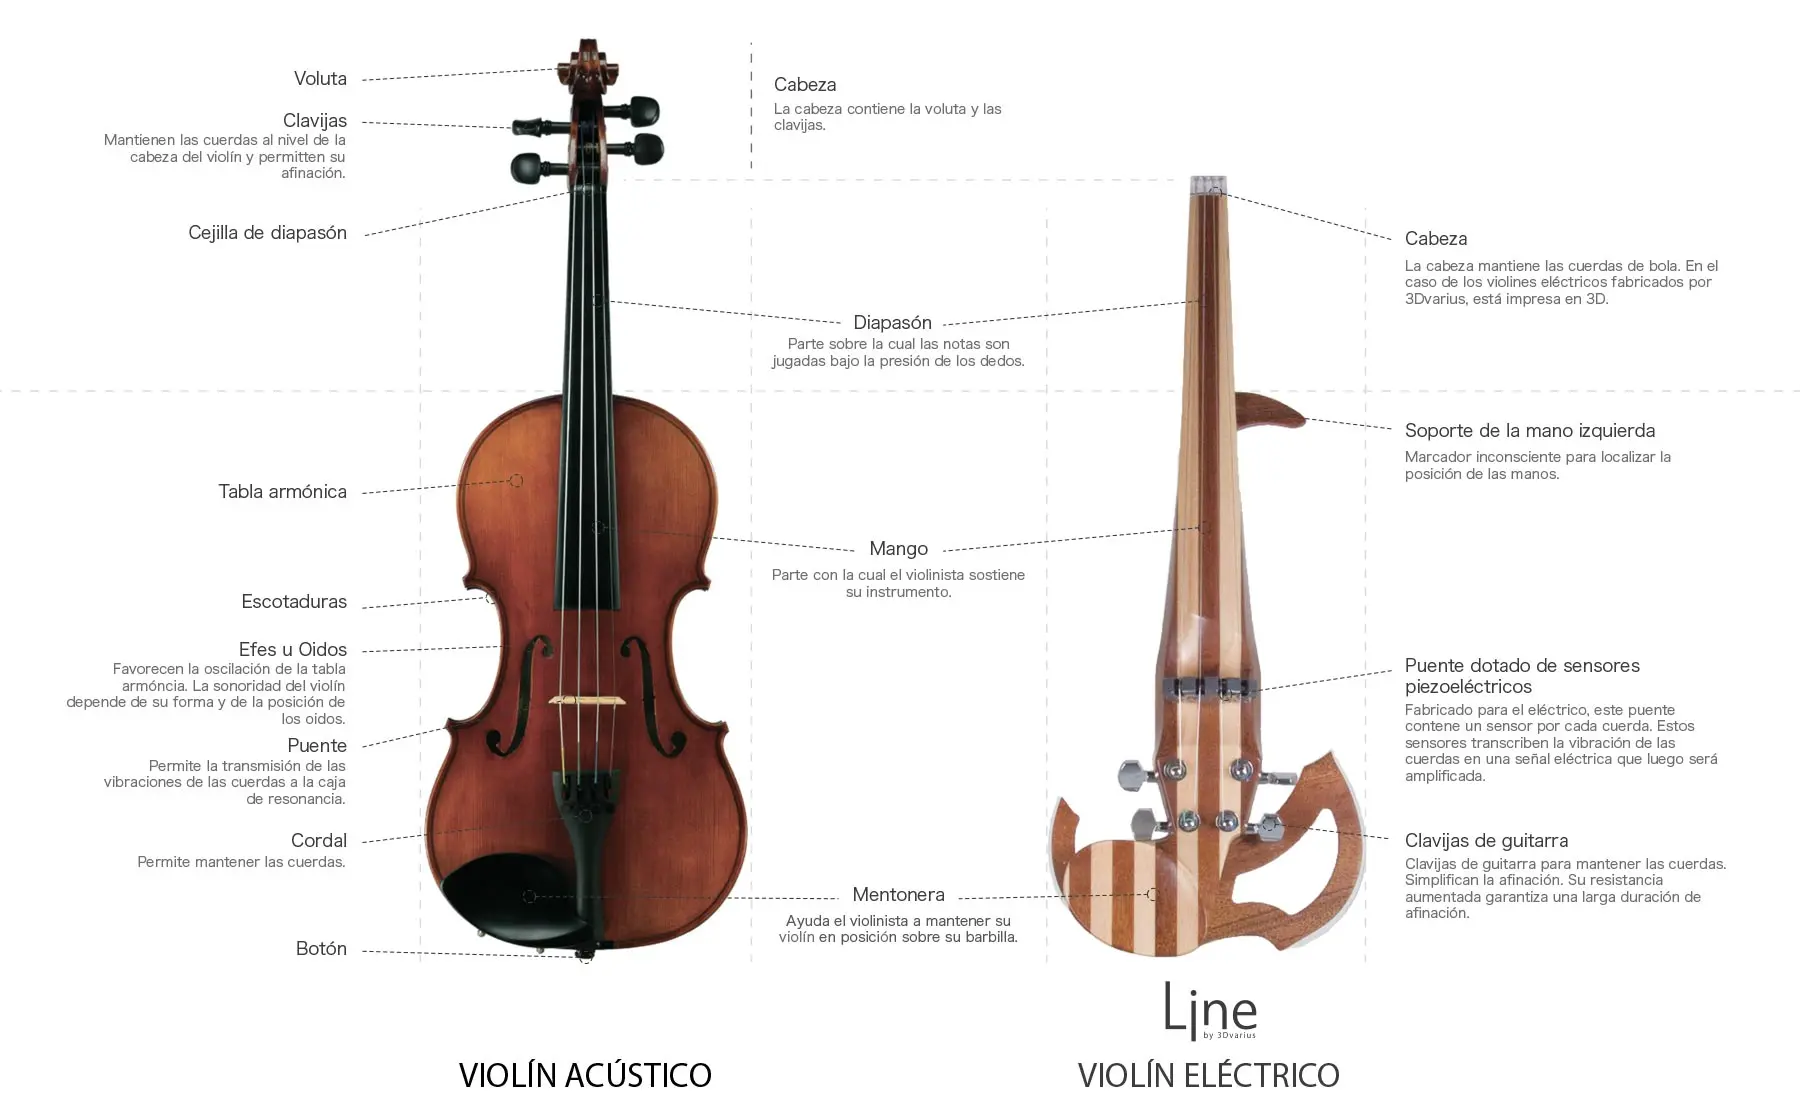 comparacion entre guitarra y violin - Por qué la guitarra suena diferente a un violín